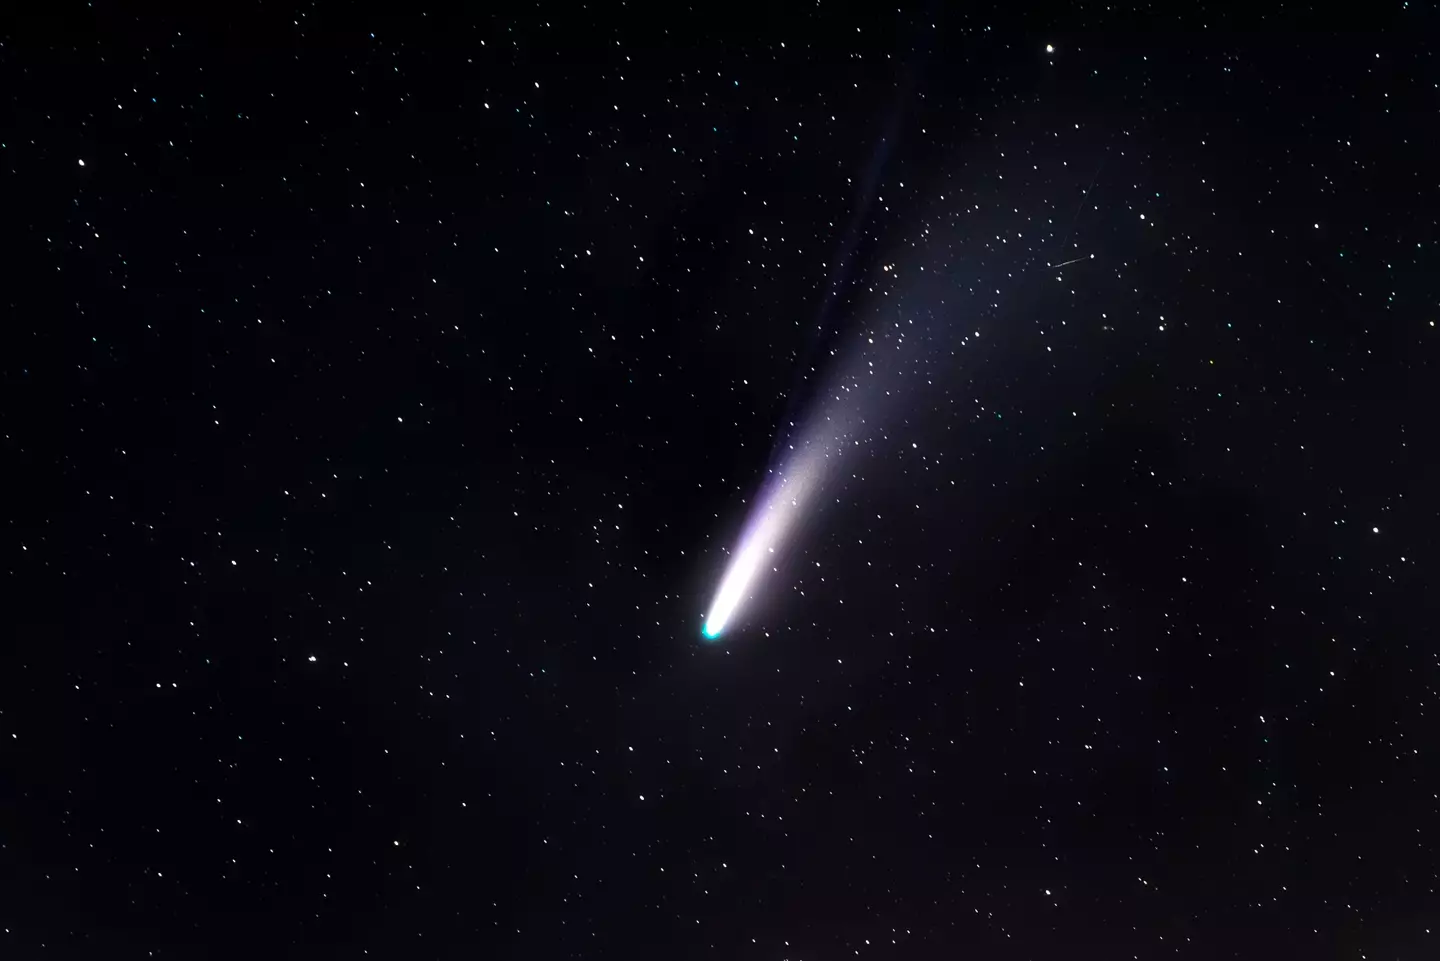 The comet measures 20 miles in diameter.